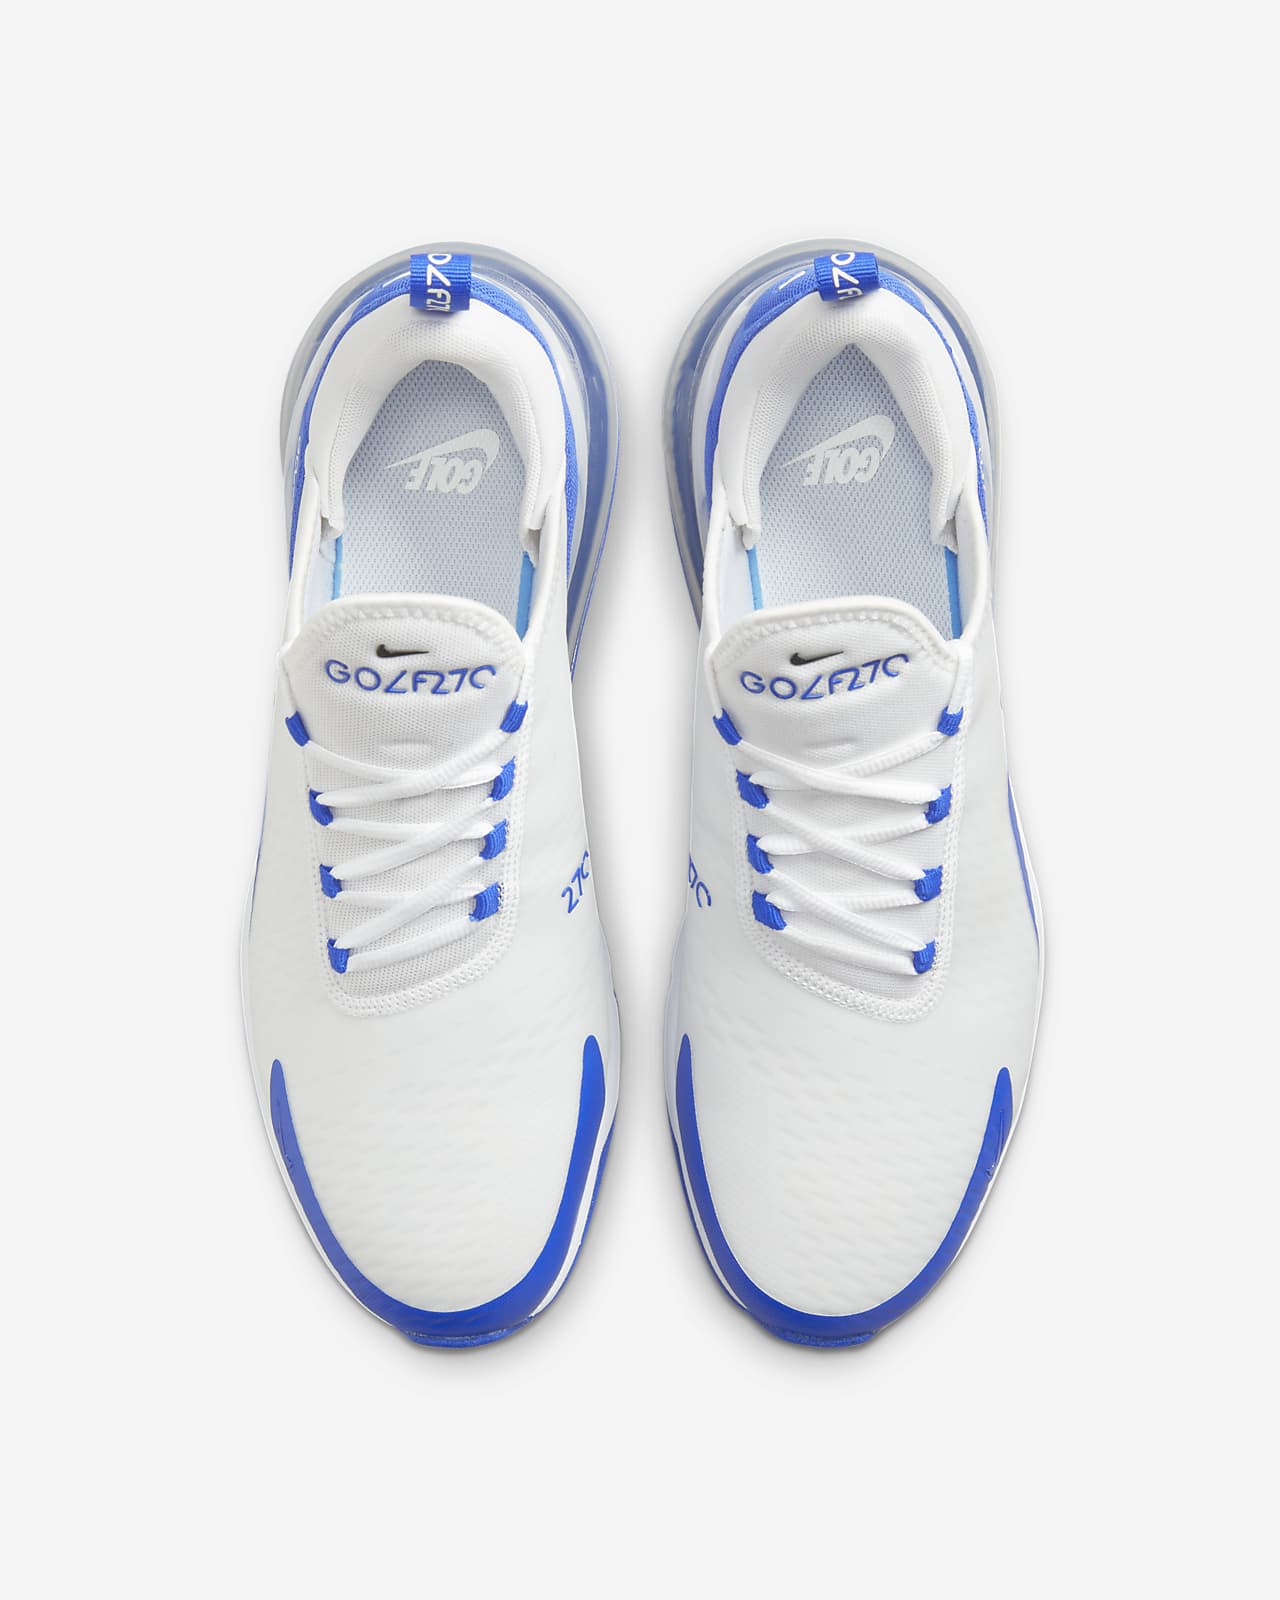 Nike Air Max 270 G Golf Shoe